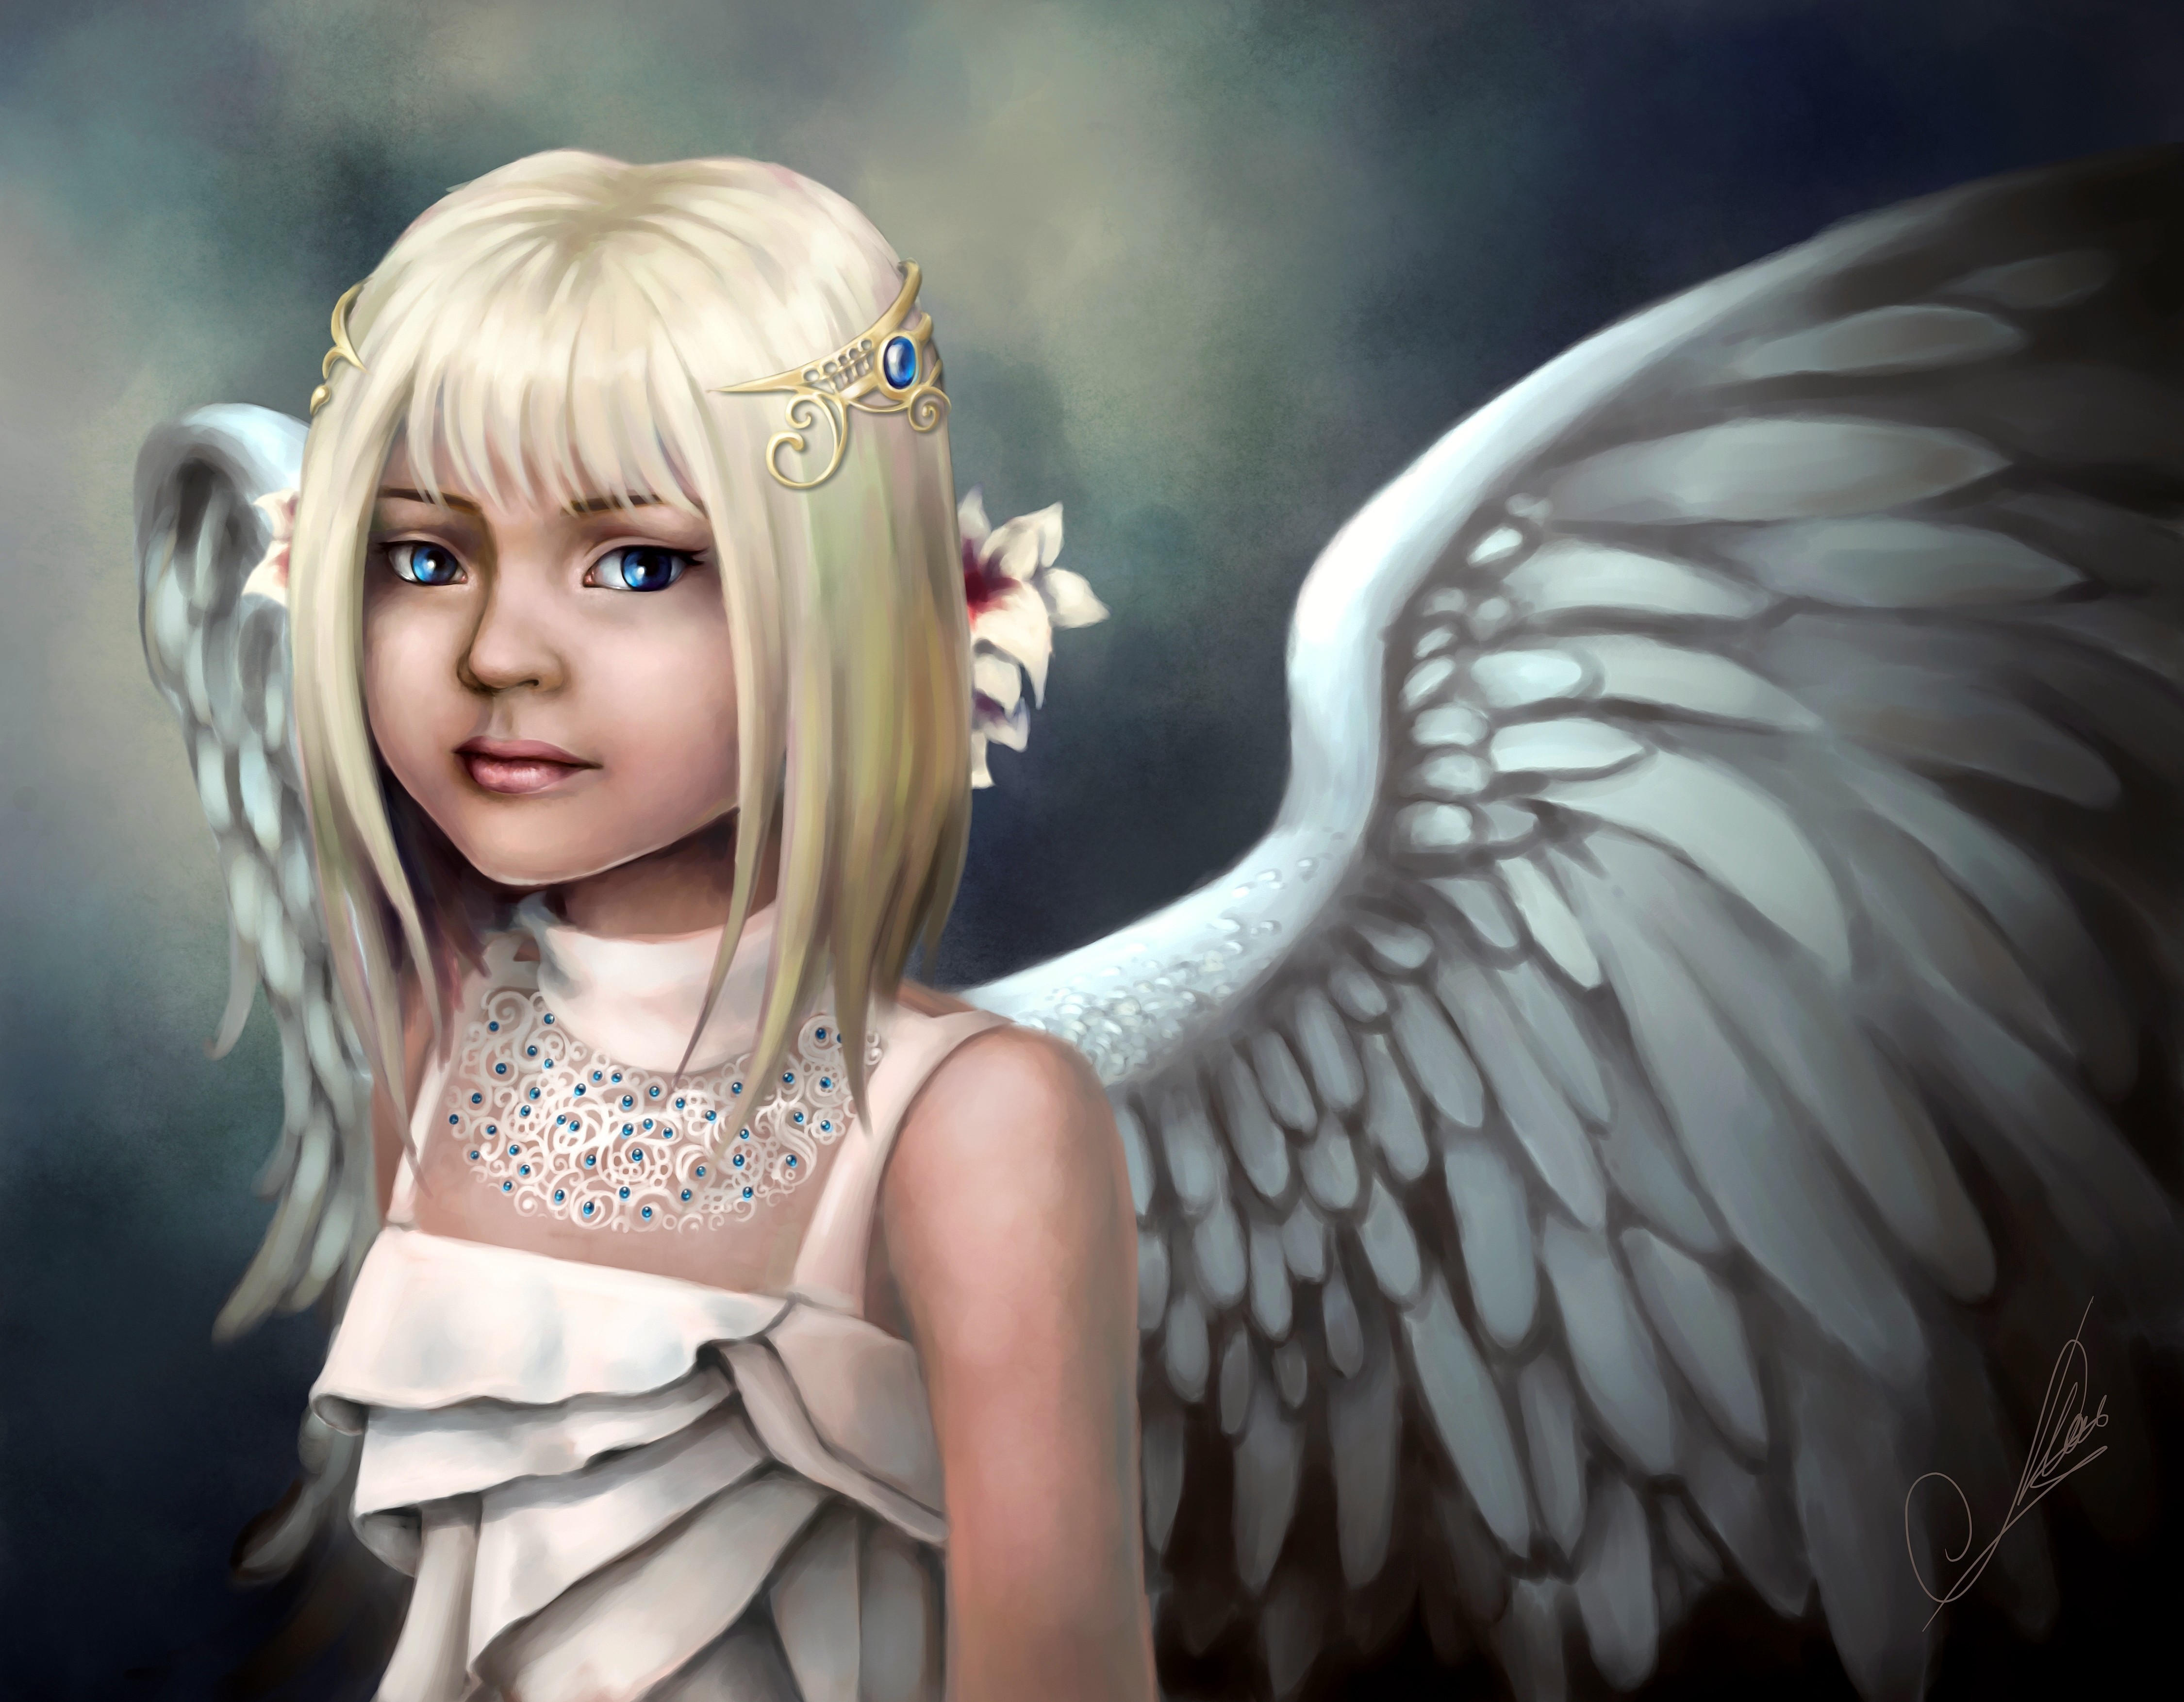 angels, Wings, Blonde, Girl, Little, Girls, Fantasy, Children, Angel, Child, Cute, Girl Wallpaper